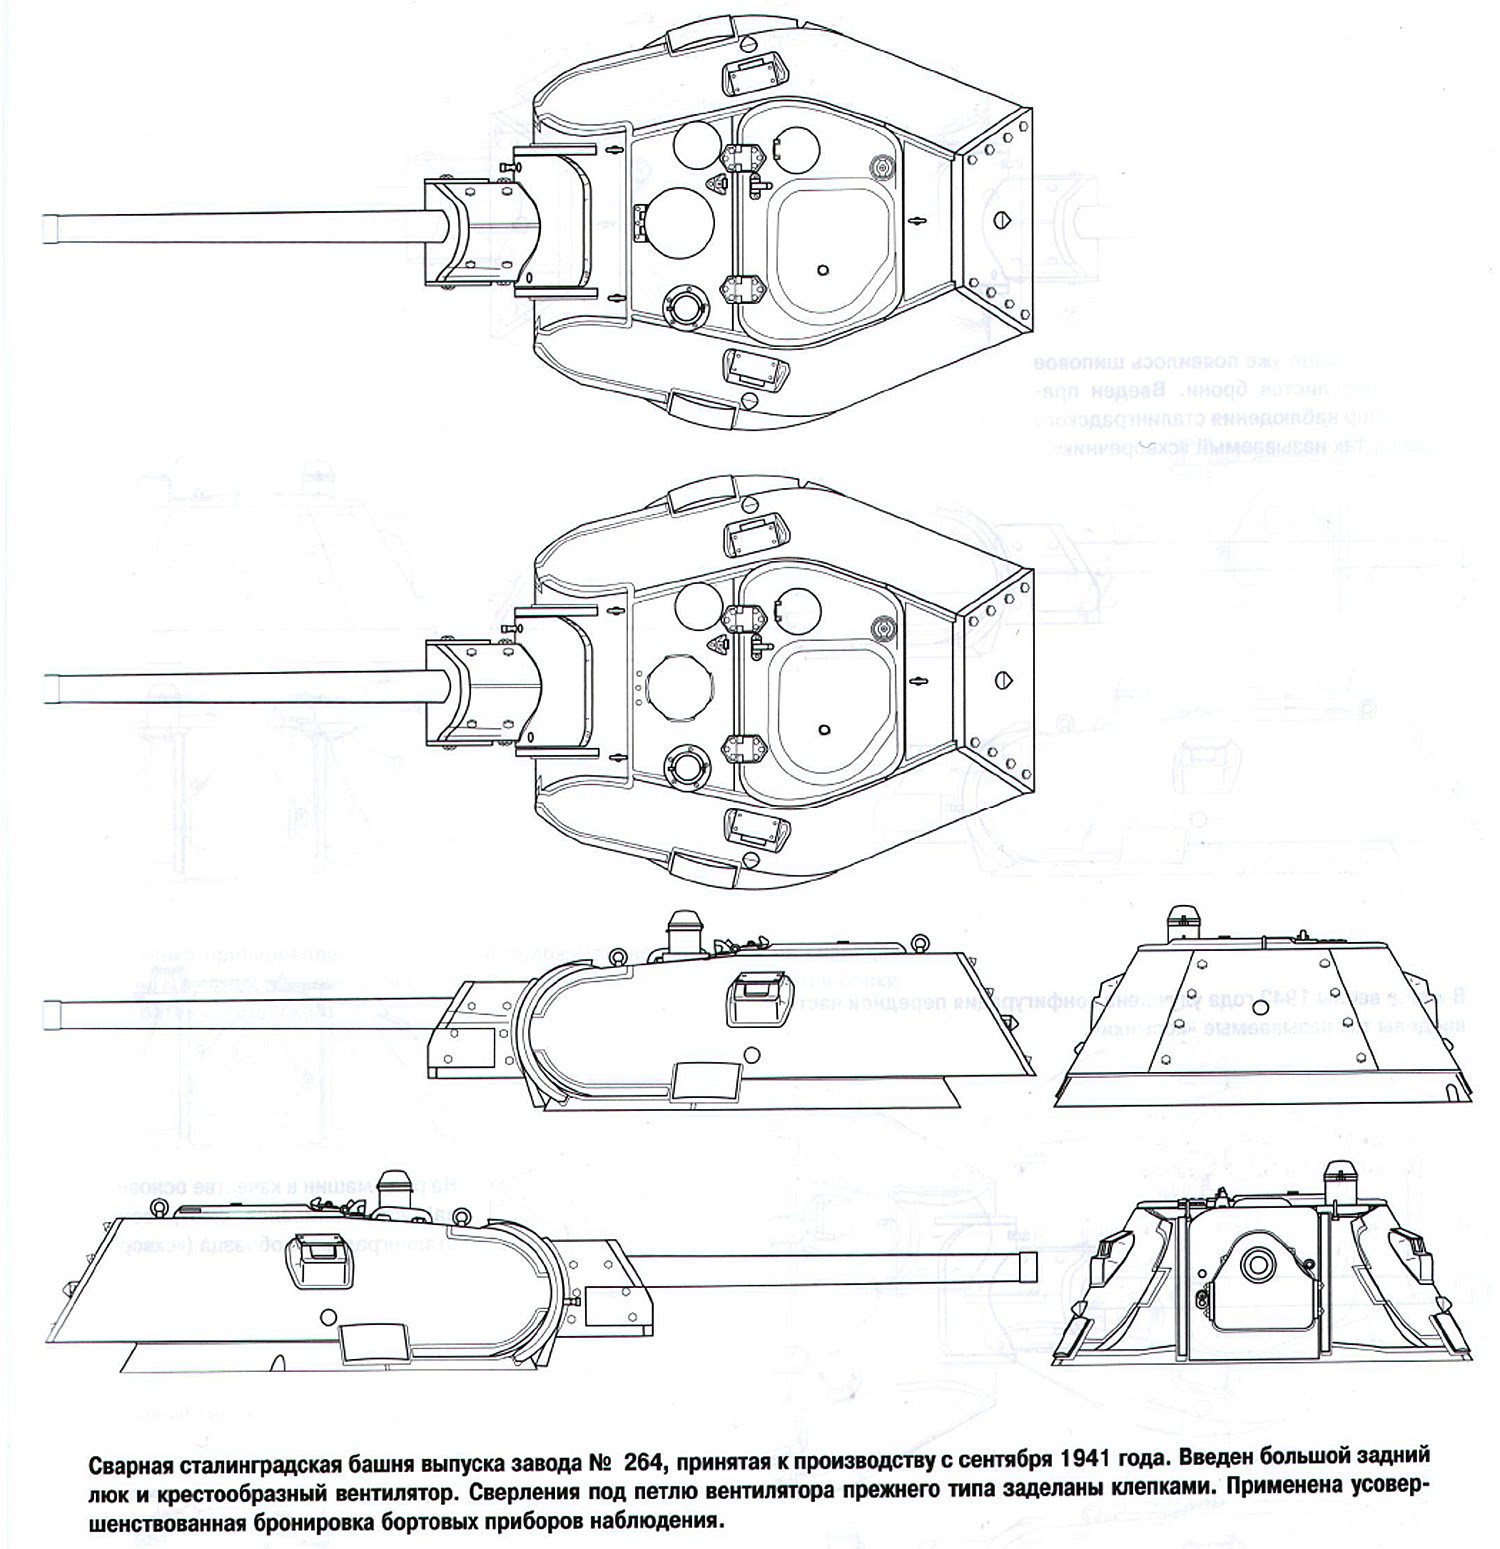 Как сделать танк из картона схема. Башня т 34 СТЗ чертеж. Чертеж башни танка т-34. Танк т-34 чертеж. Чертеж башни танка т-34 76.